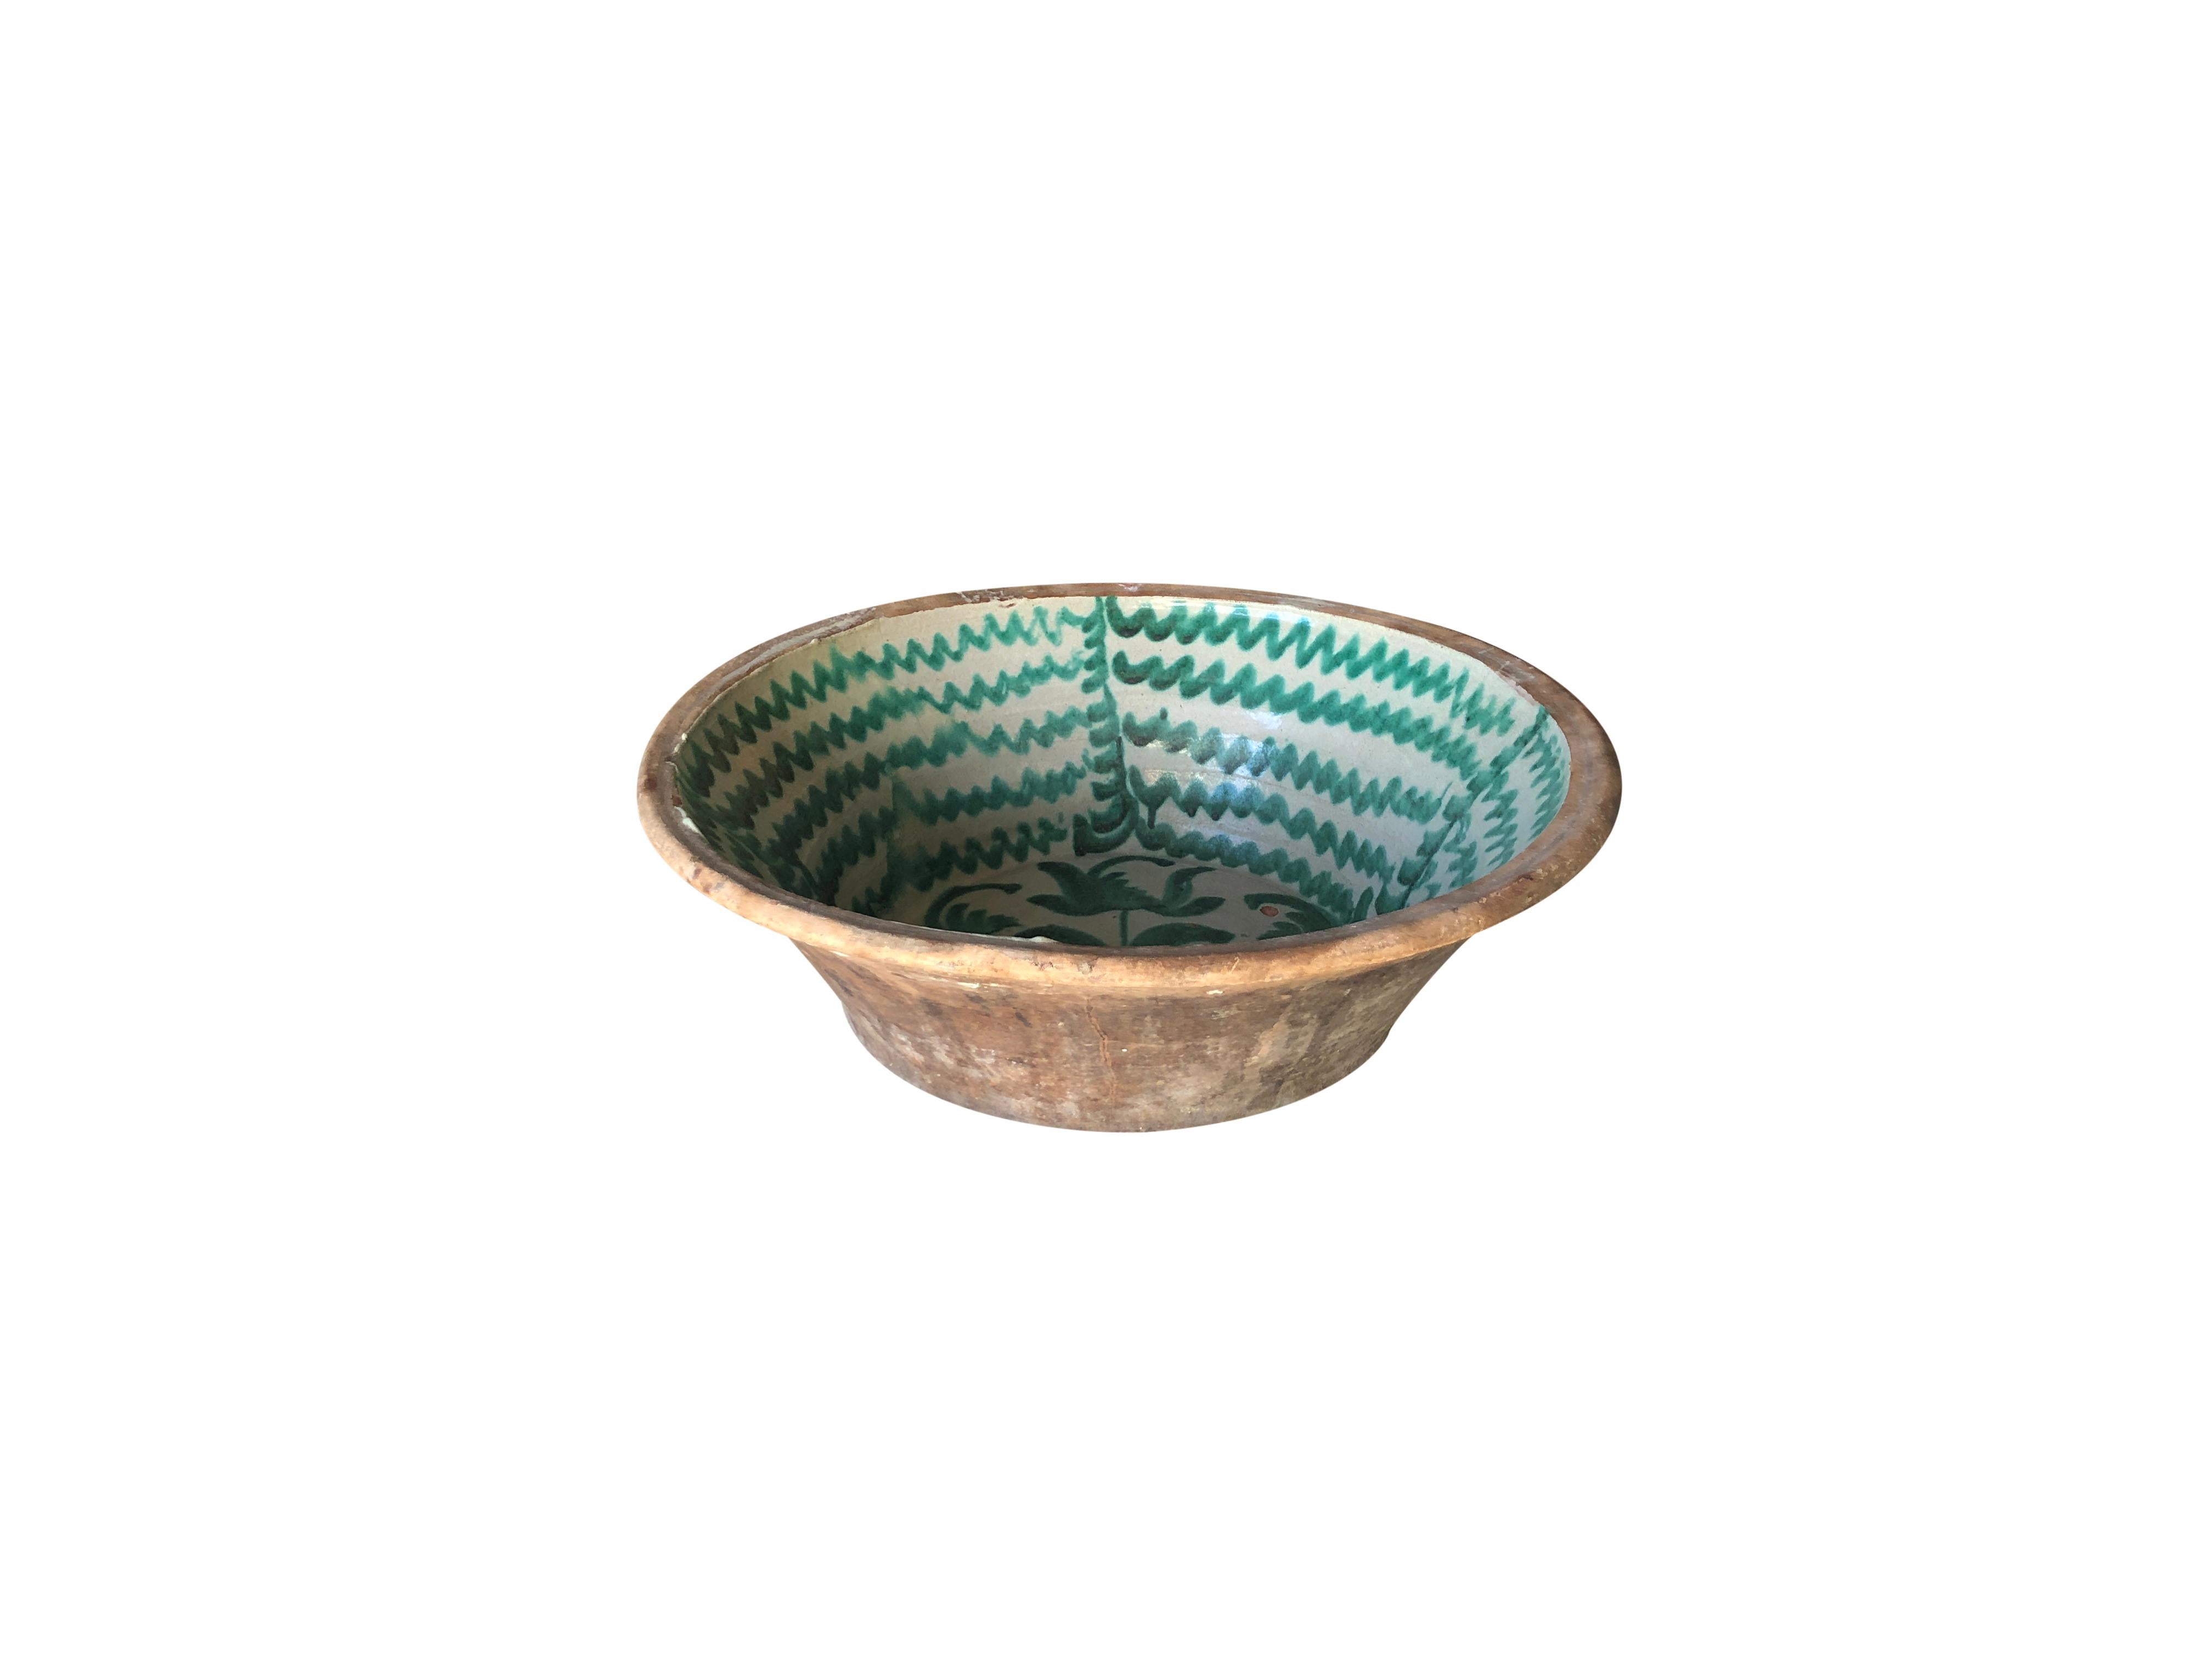 Hand-Crafted 19th Century Granada Lebrillo Bowl, Spanish Terracotta Decor